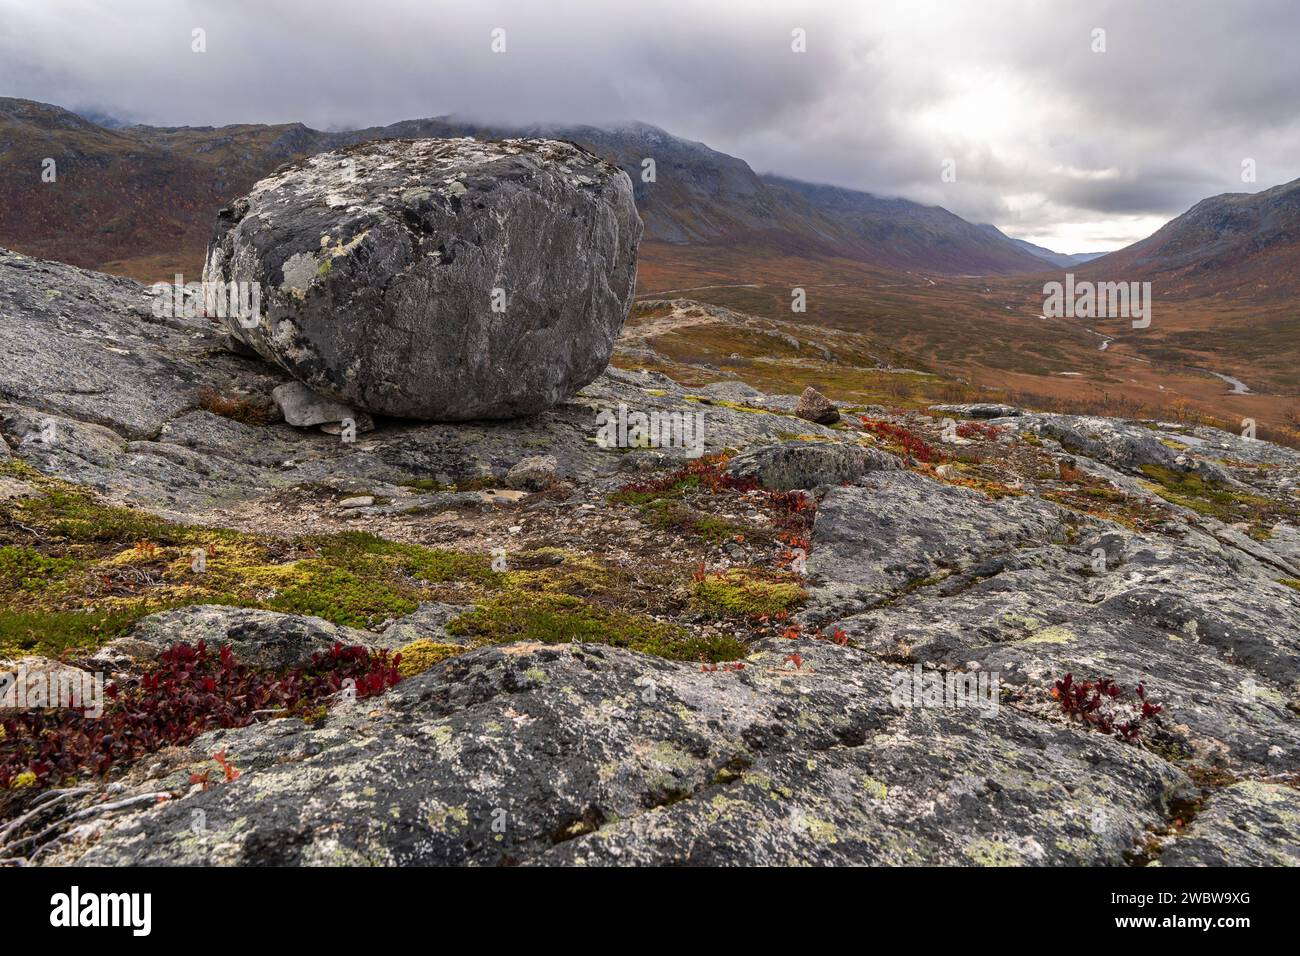 Einzelner Stein, Felsbrocken, abgerundeter Gletscherstein auf der Insel Kvaløya in Troms, Norwegen. Tiefe Gletschertäler mit herbstbunten Bäumen und felsigem Gipfel Stockfoto